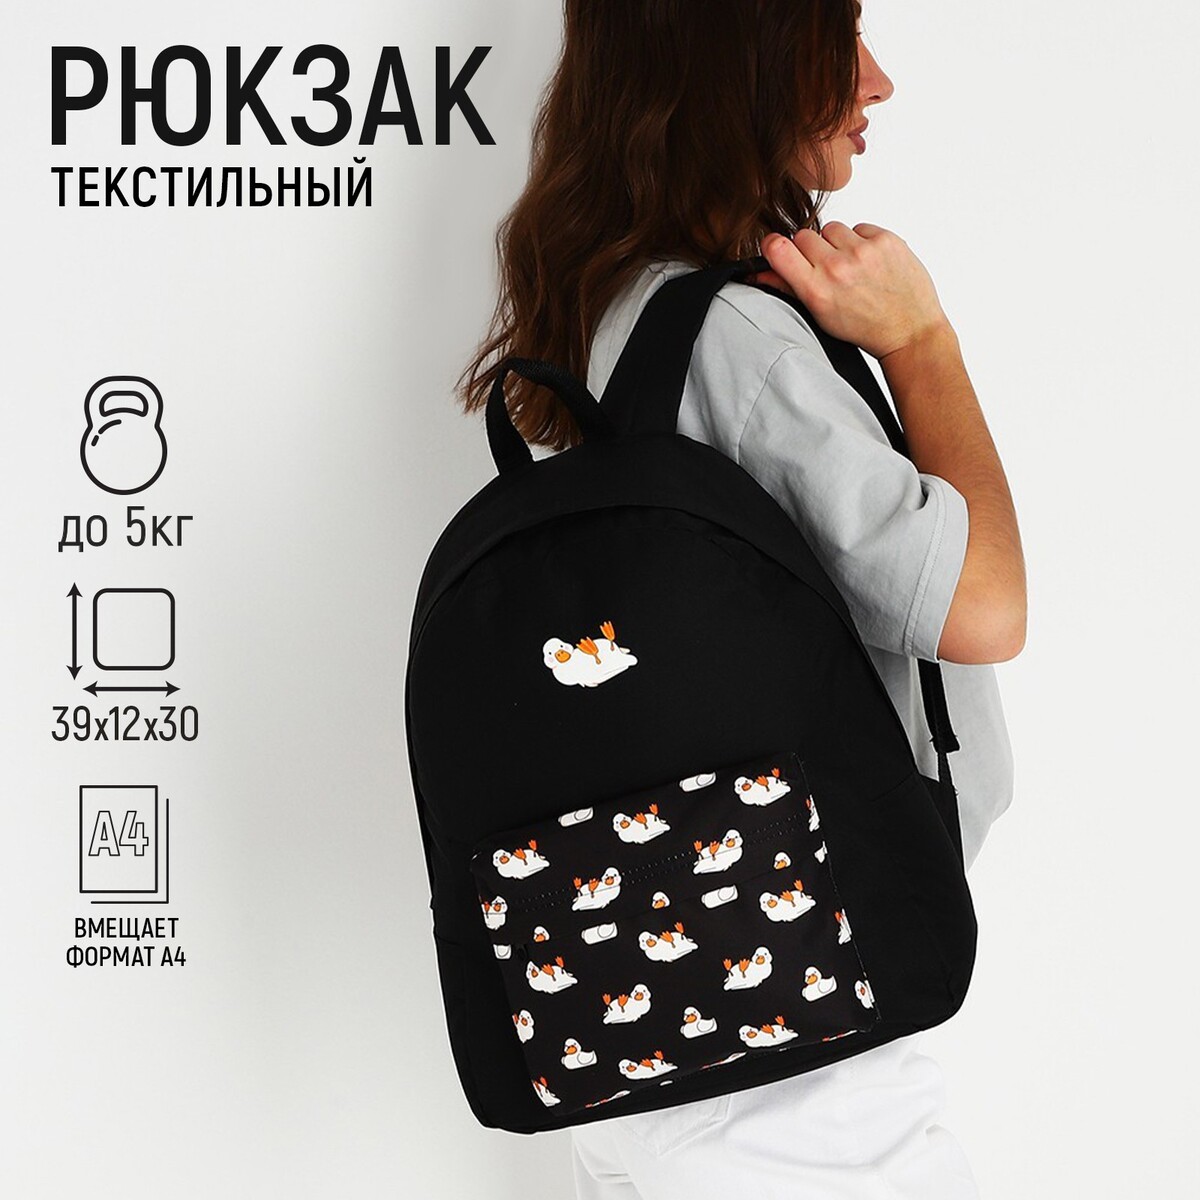 фото Рюкзак текстильный уточки, с карманом, цвет черный nazamok